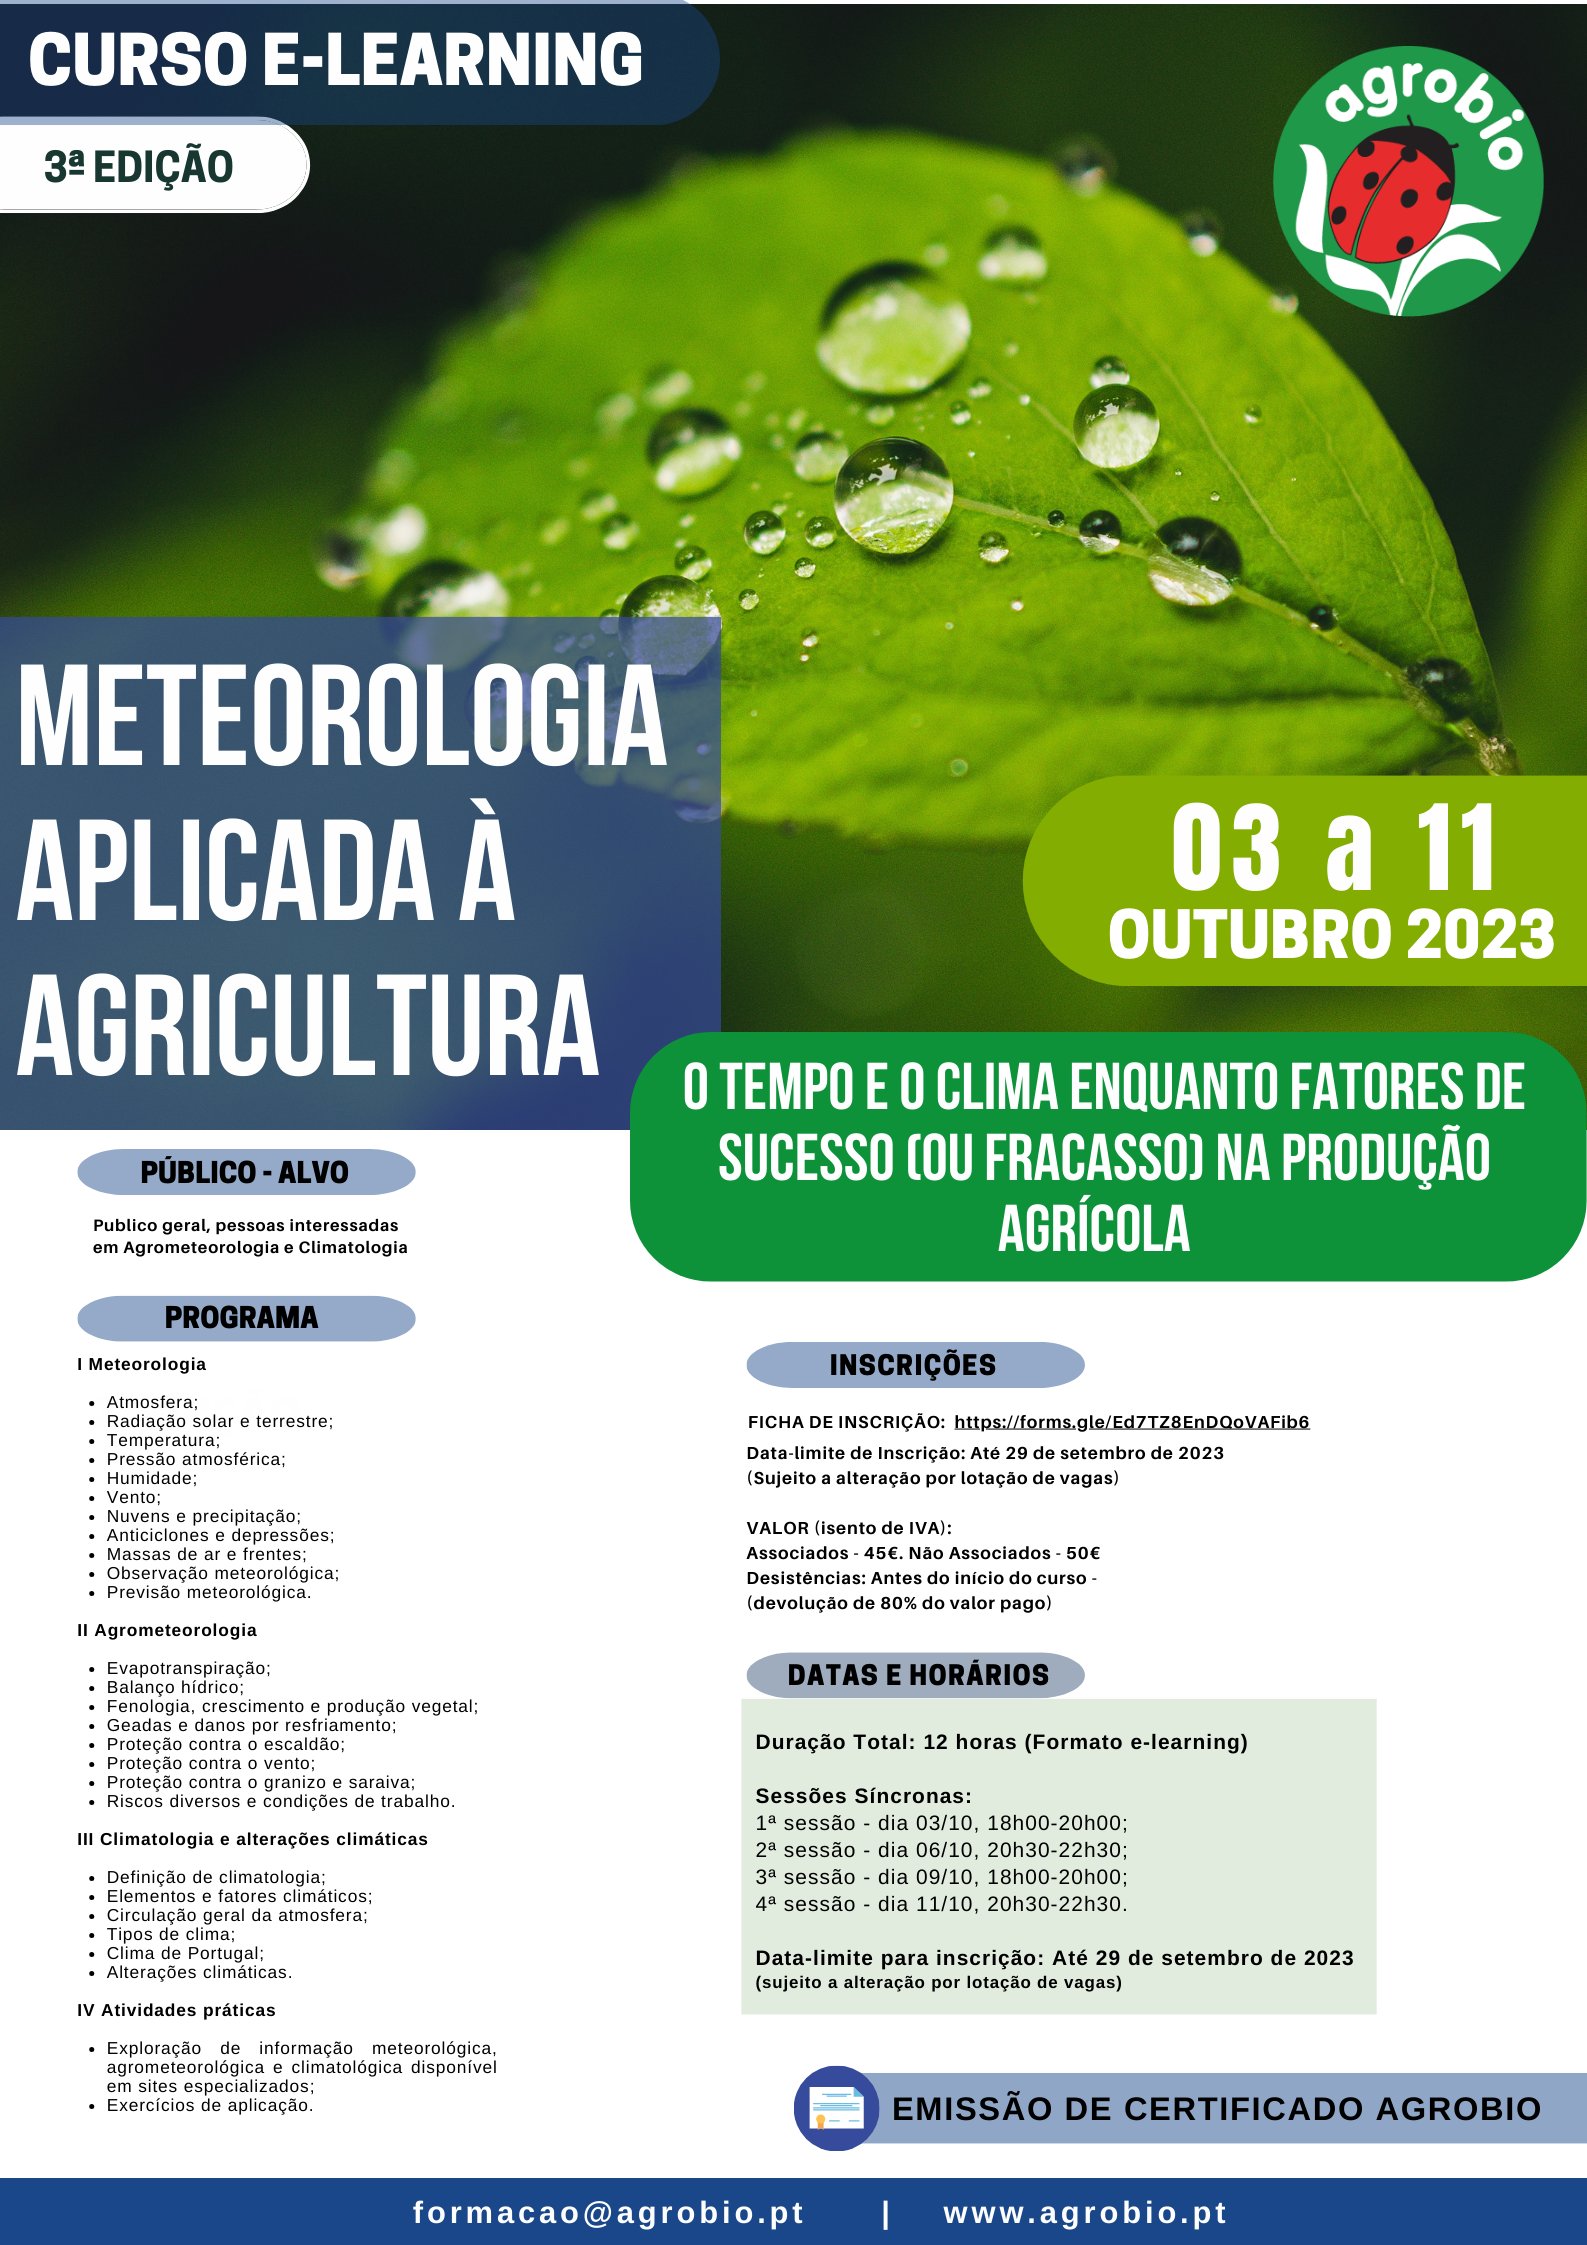 AGROBIO, Agricultura biológica;Metereologia Aplicada à Agricultura